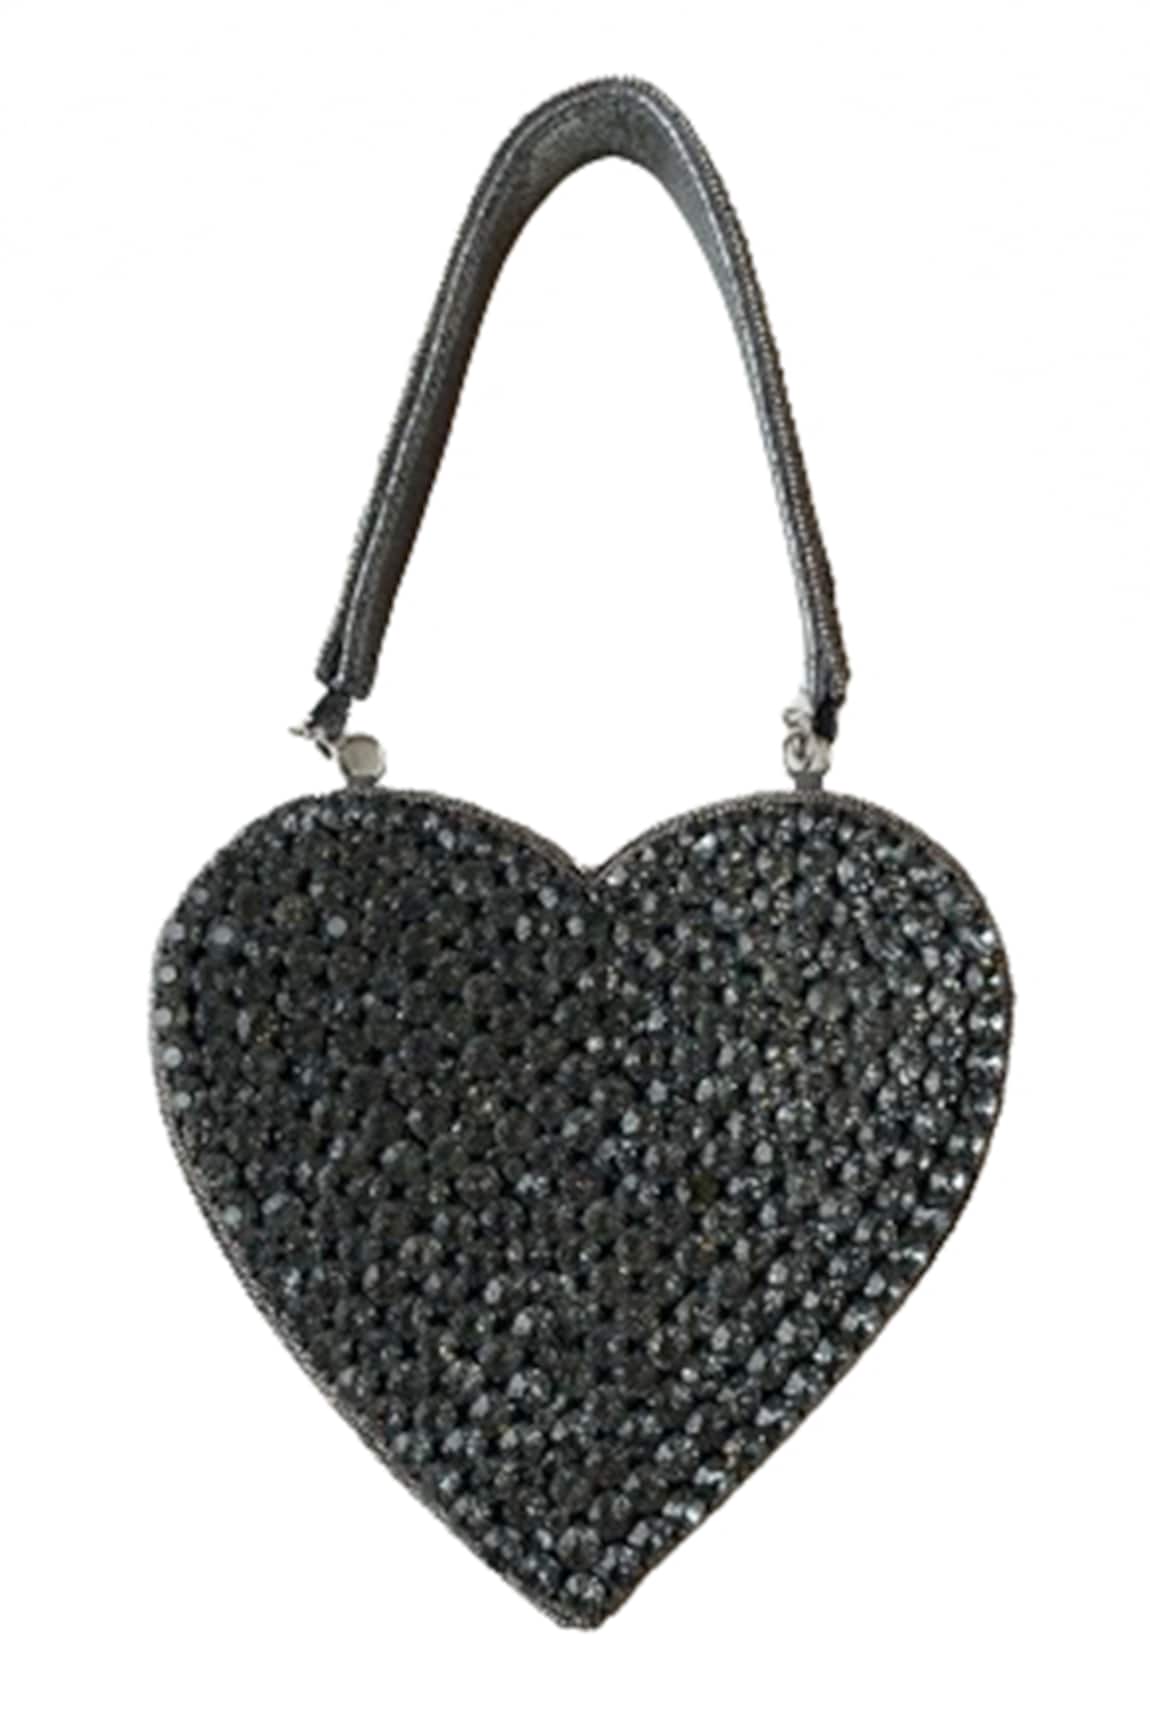 Oceana Clutches Rhinestone Embellished Heart Bag